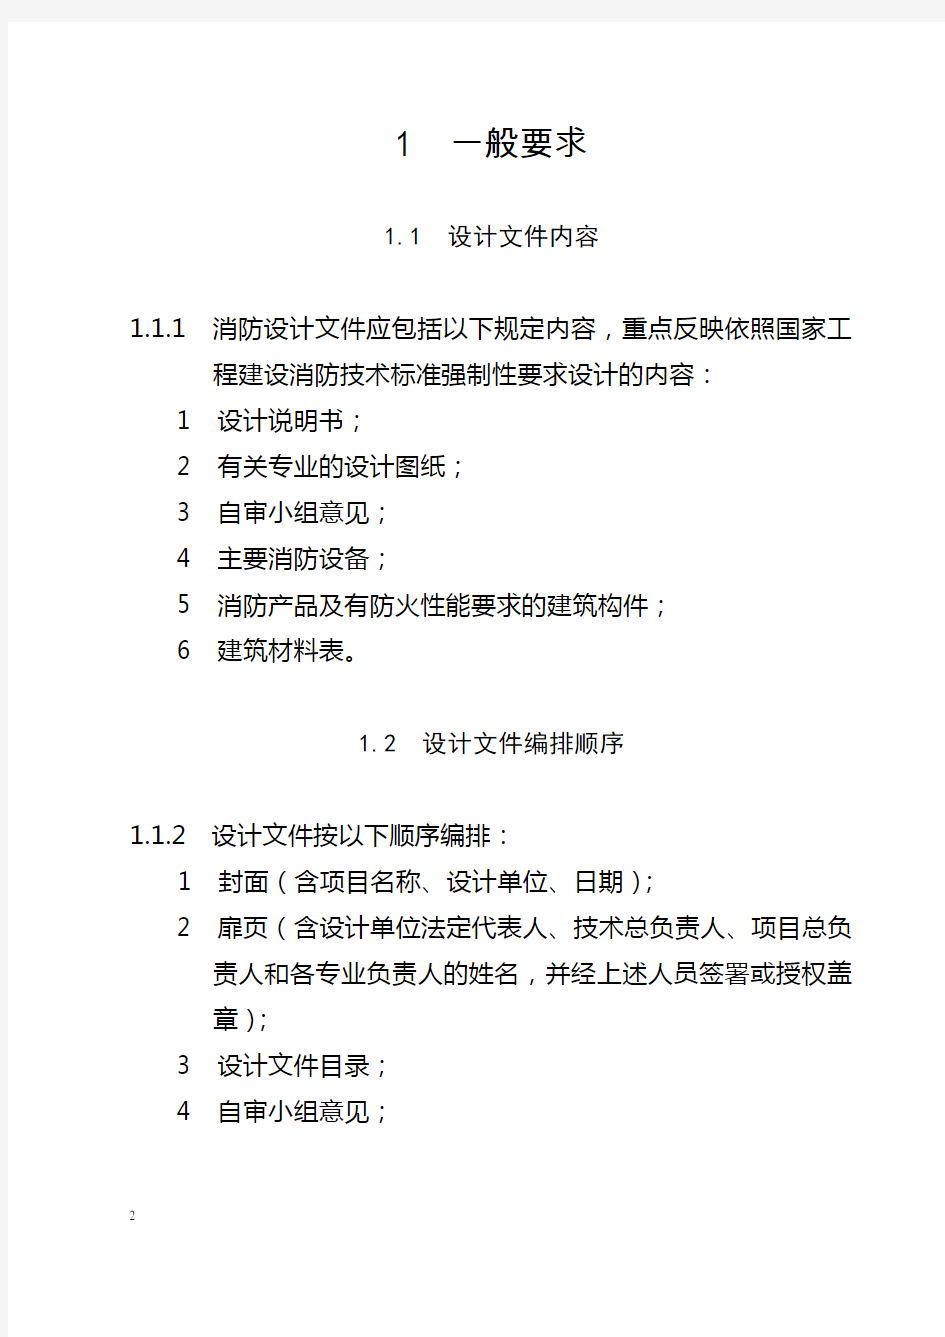 渝公发[2010]716号《重庆市建设工程消防设计文件编制深度规定》